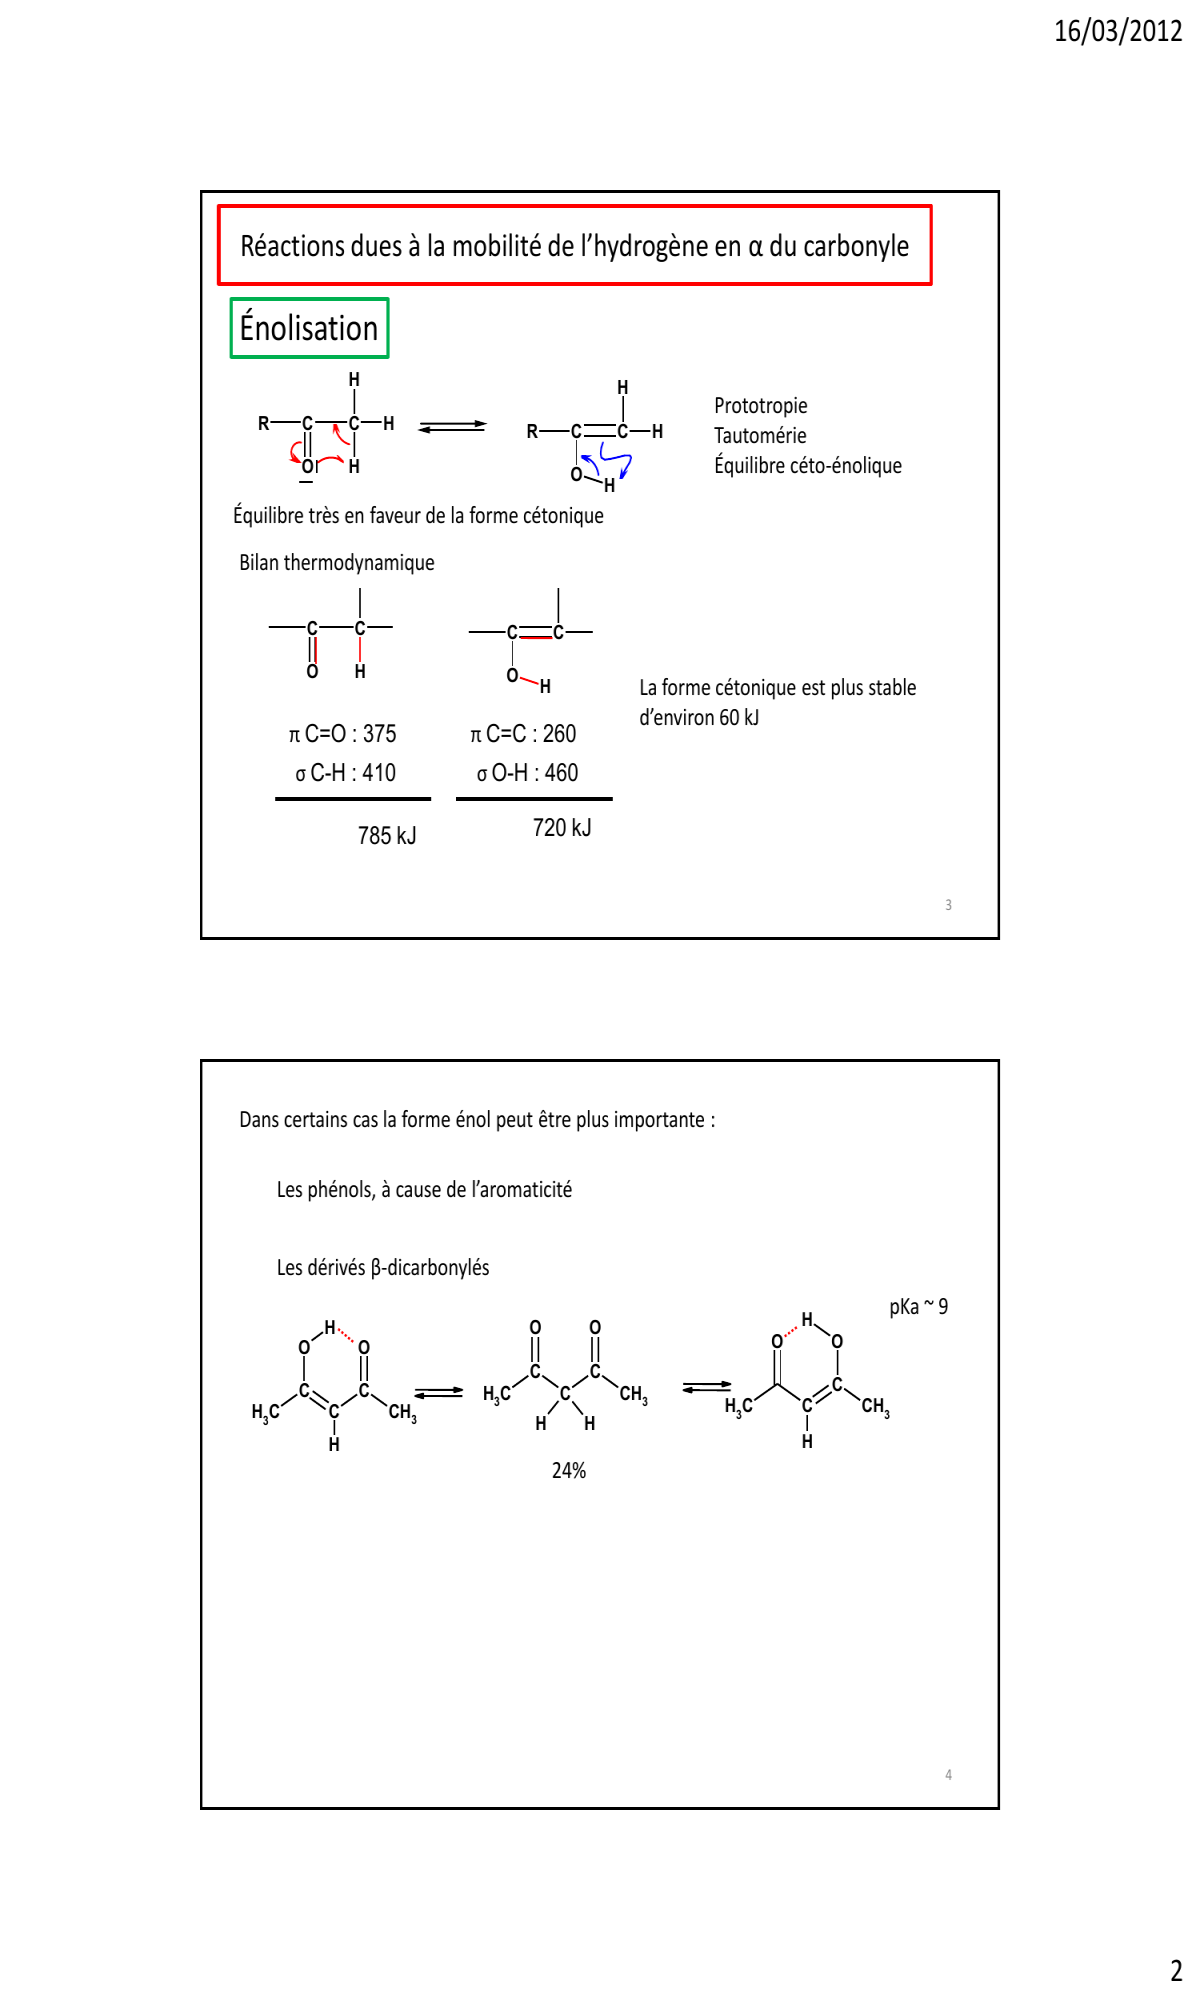 Prévisualisation du document 16/03/2012

Dérivés Carbonylés

1

Propriétés Chimiques
C

+
C

O

C

-

Présence de doublets sur l'oxygène
Basicité (pKa -6 à